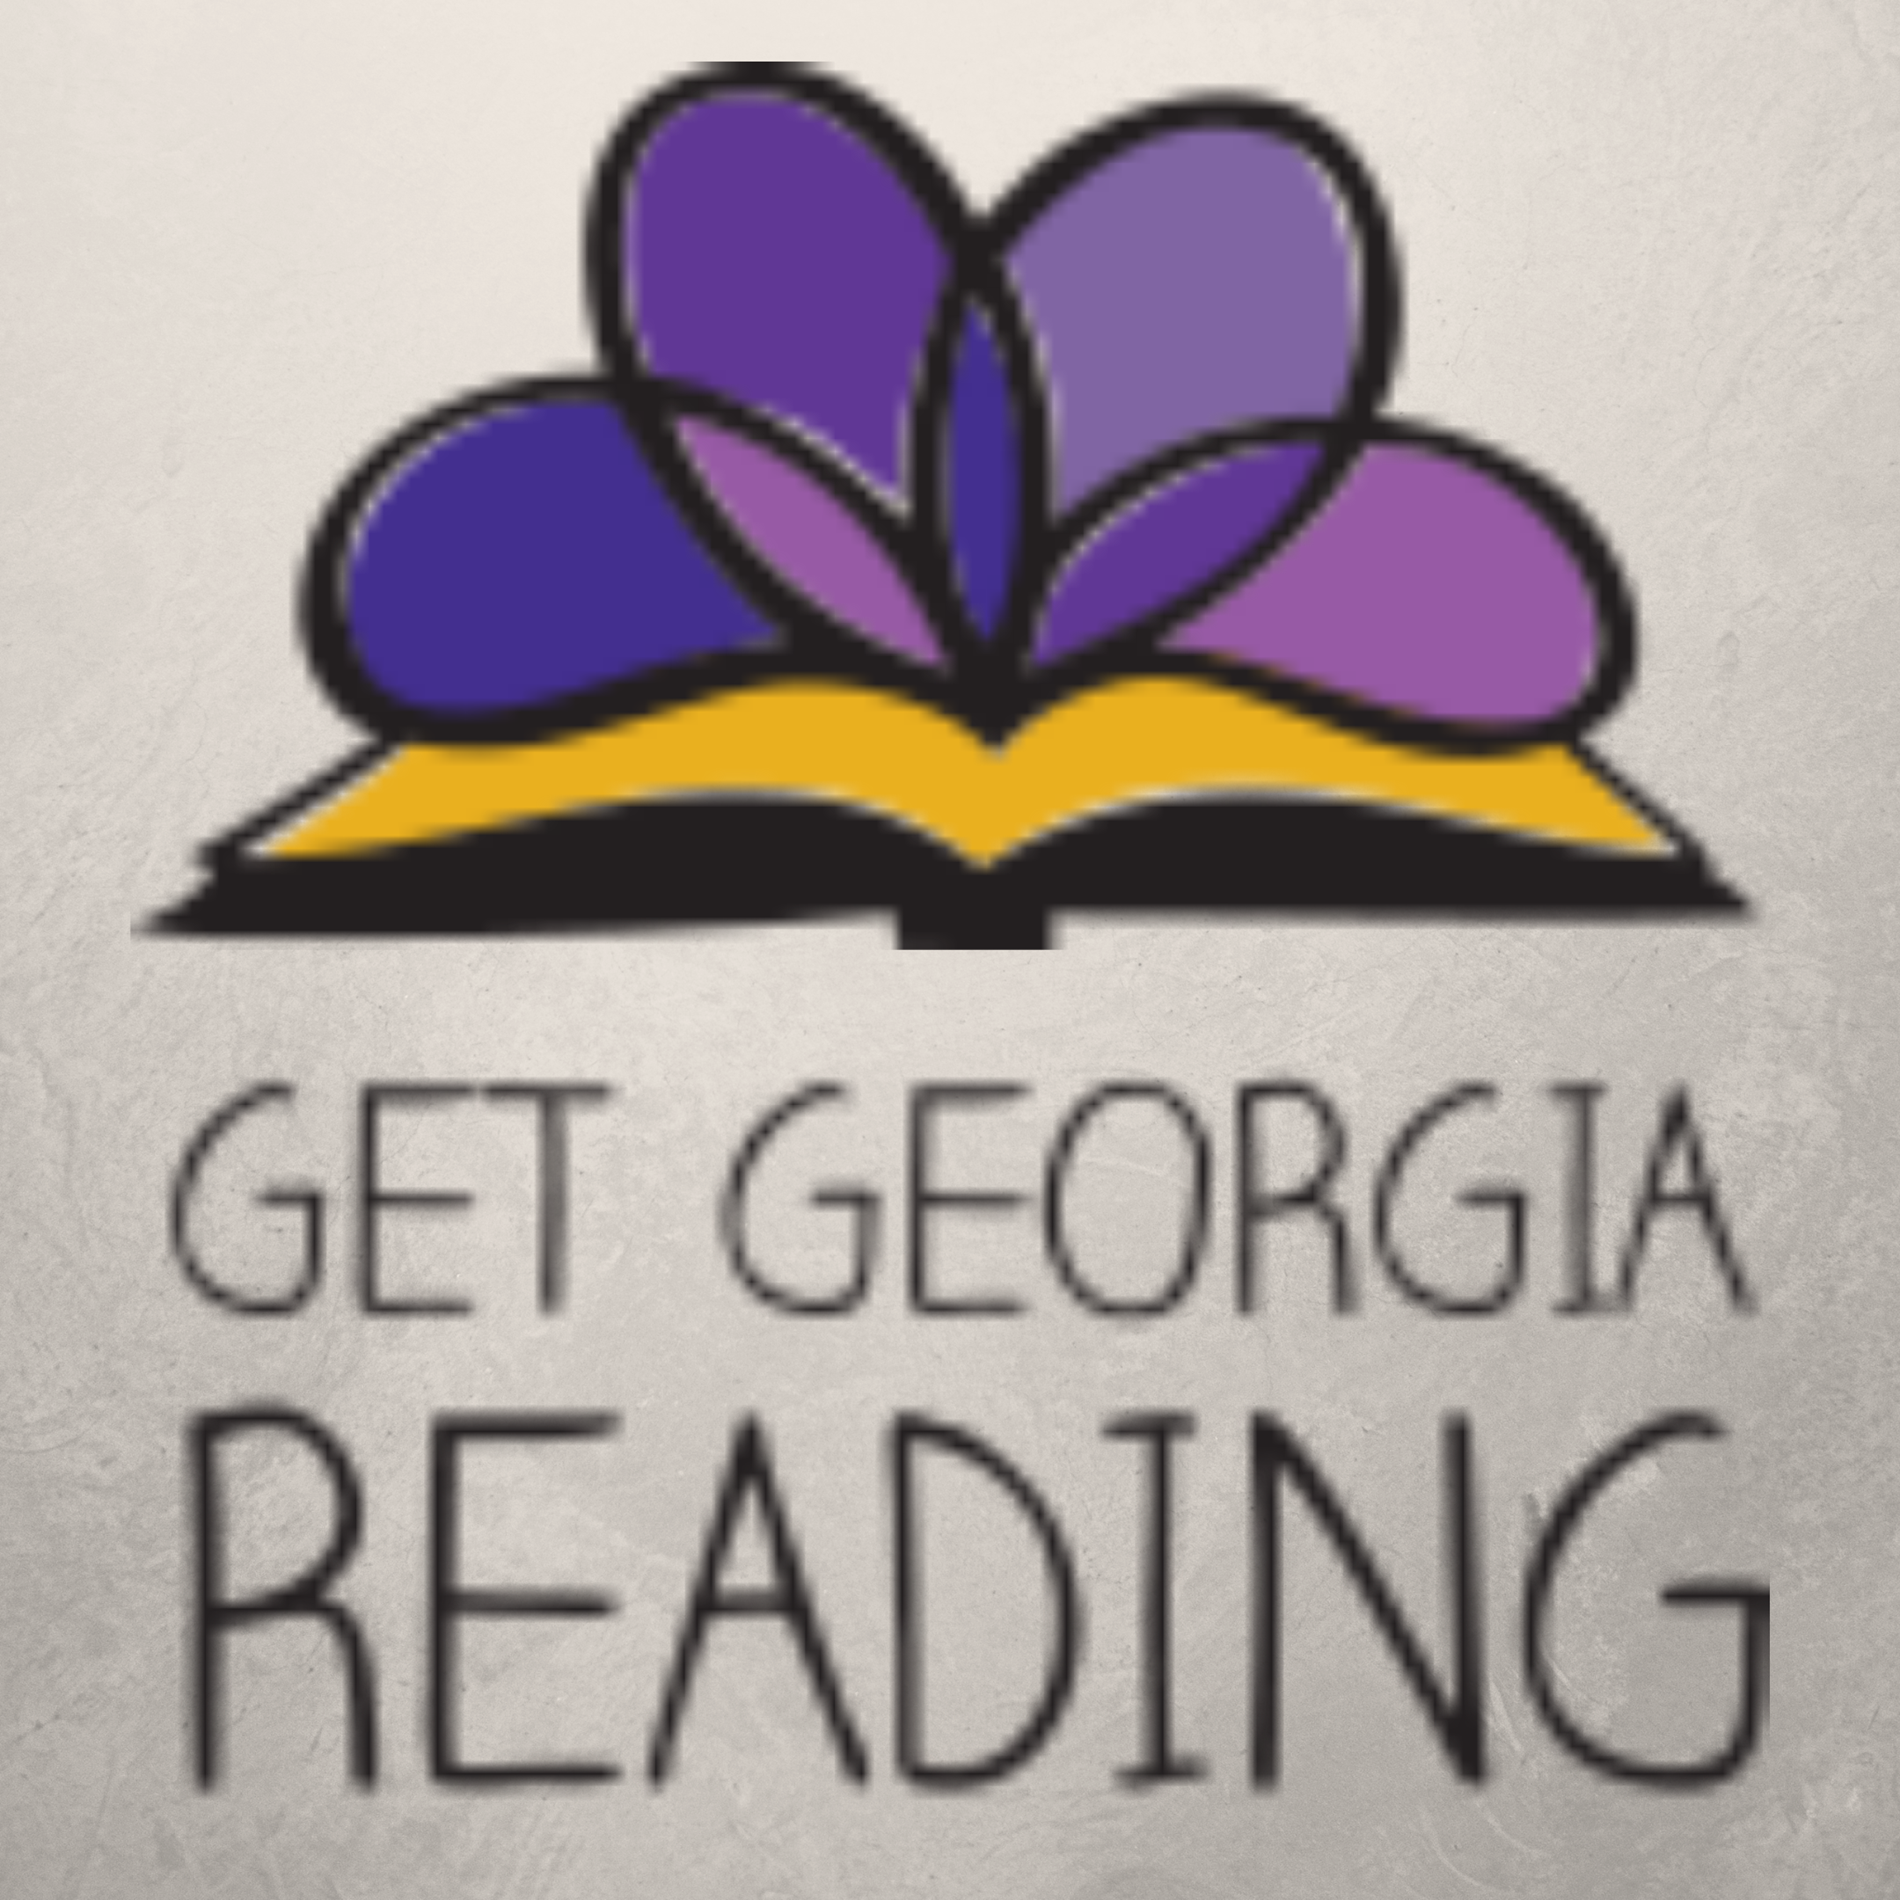 Get Georgia Reading